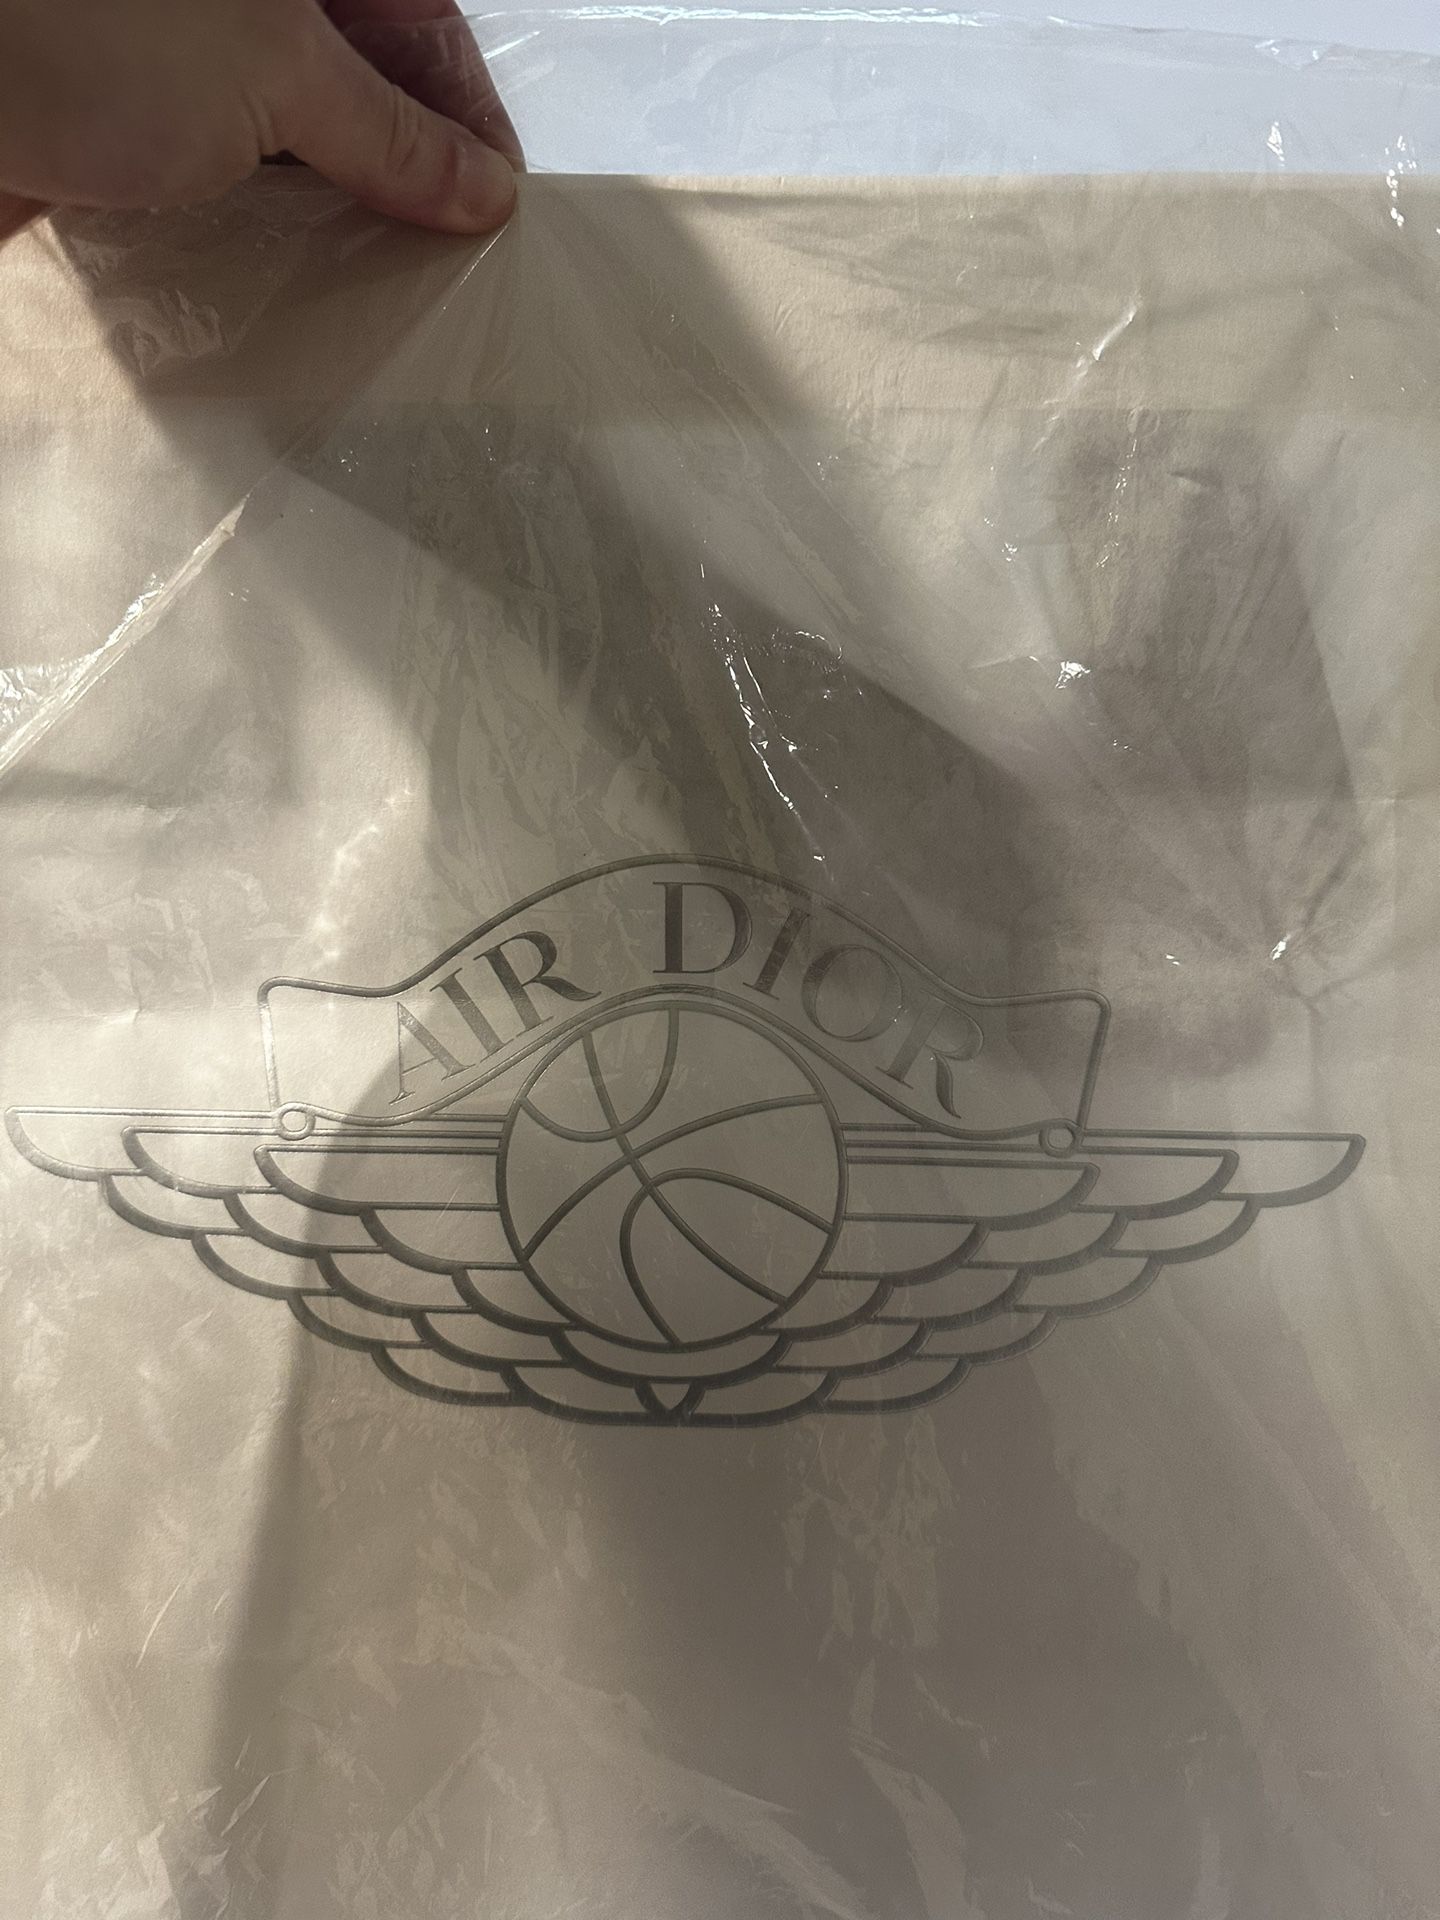 Air Dior Official Shopping Bag Nike Jordan Collab Super Rare Christian Dior 